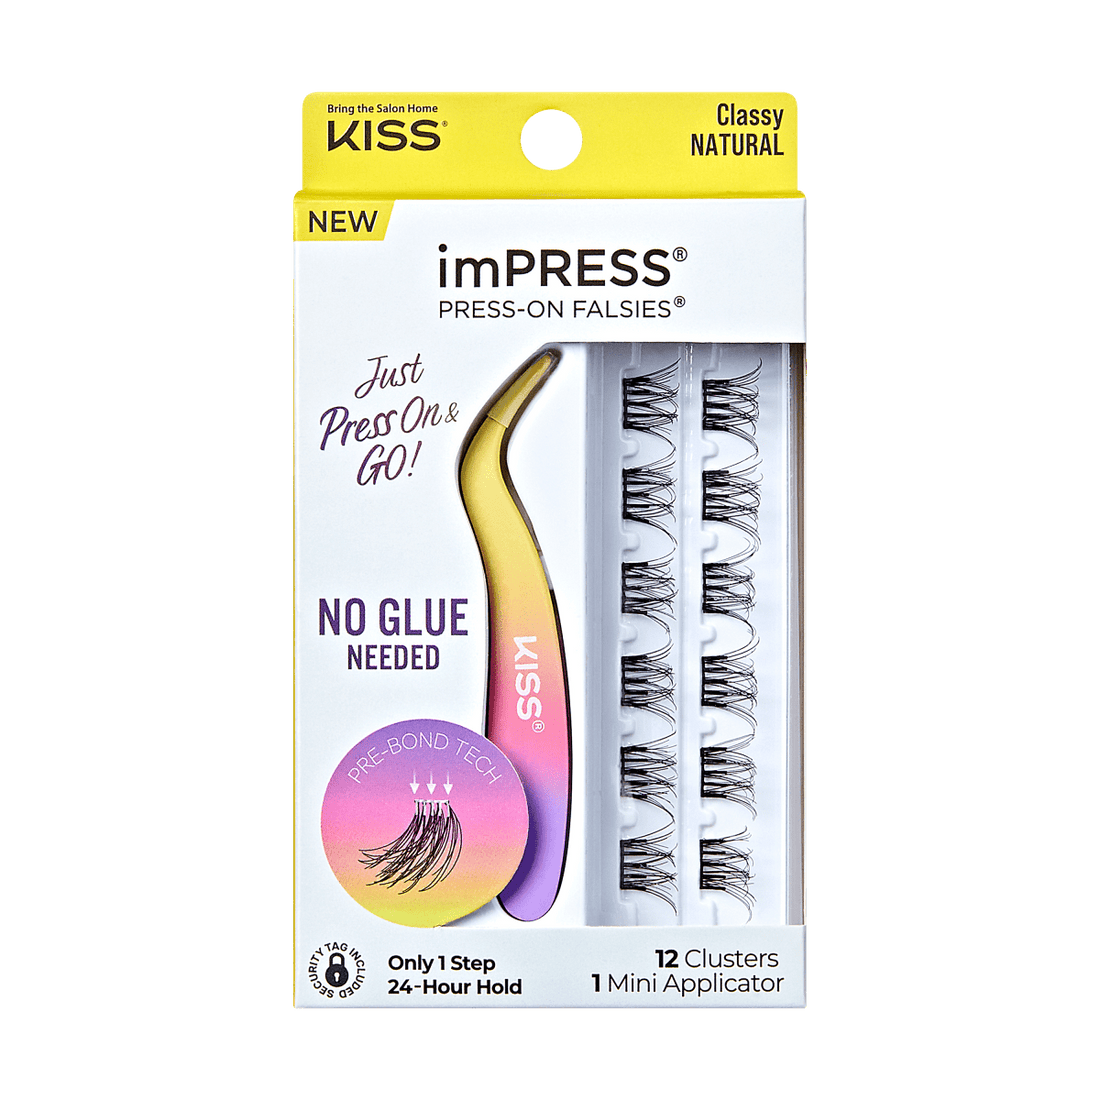 imPRESS Press-On Falsies Minipack, 12 Clusters + Applicator - Classy